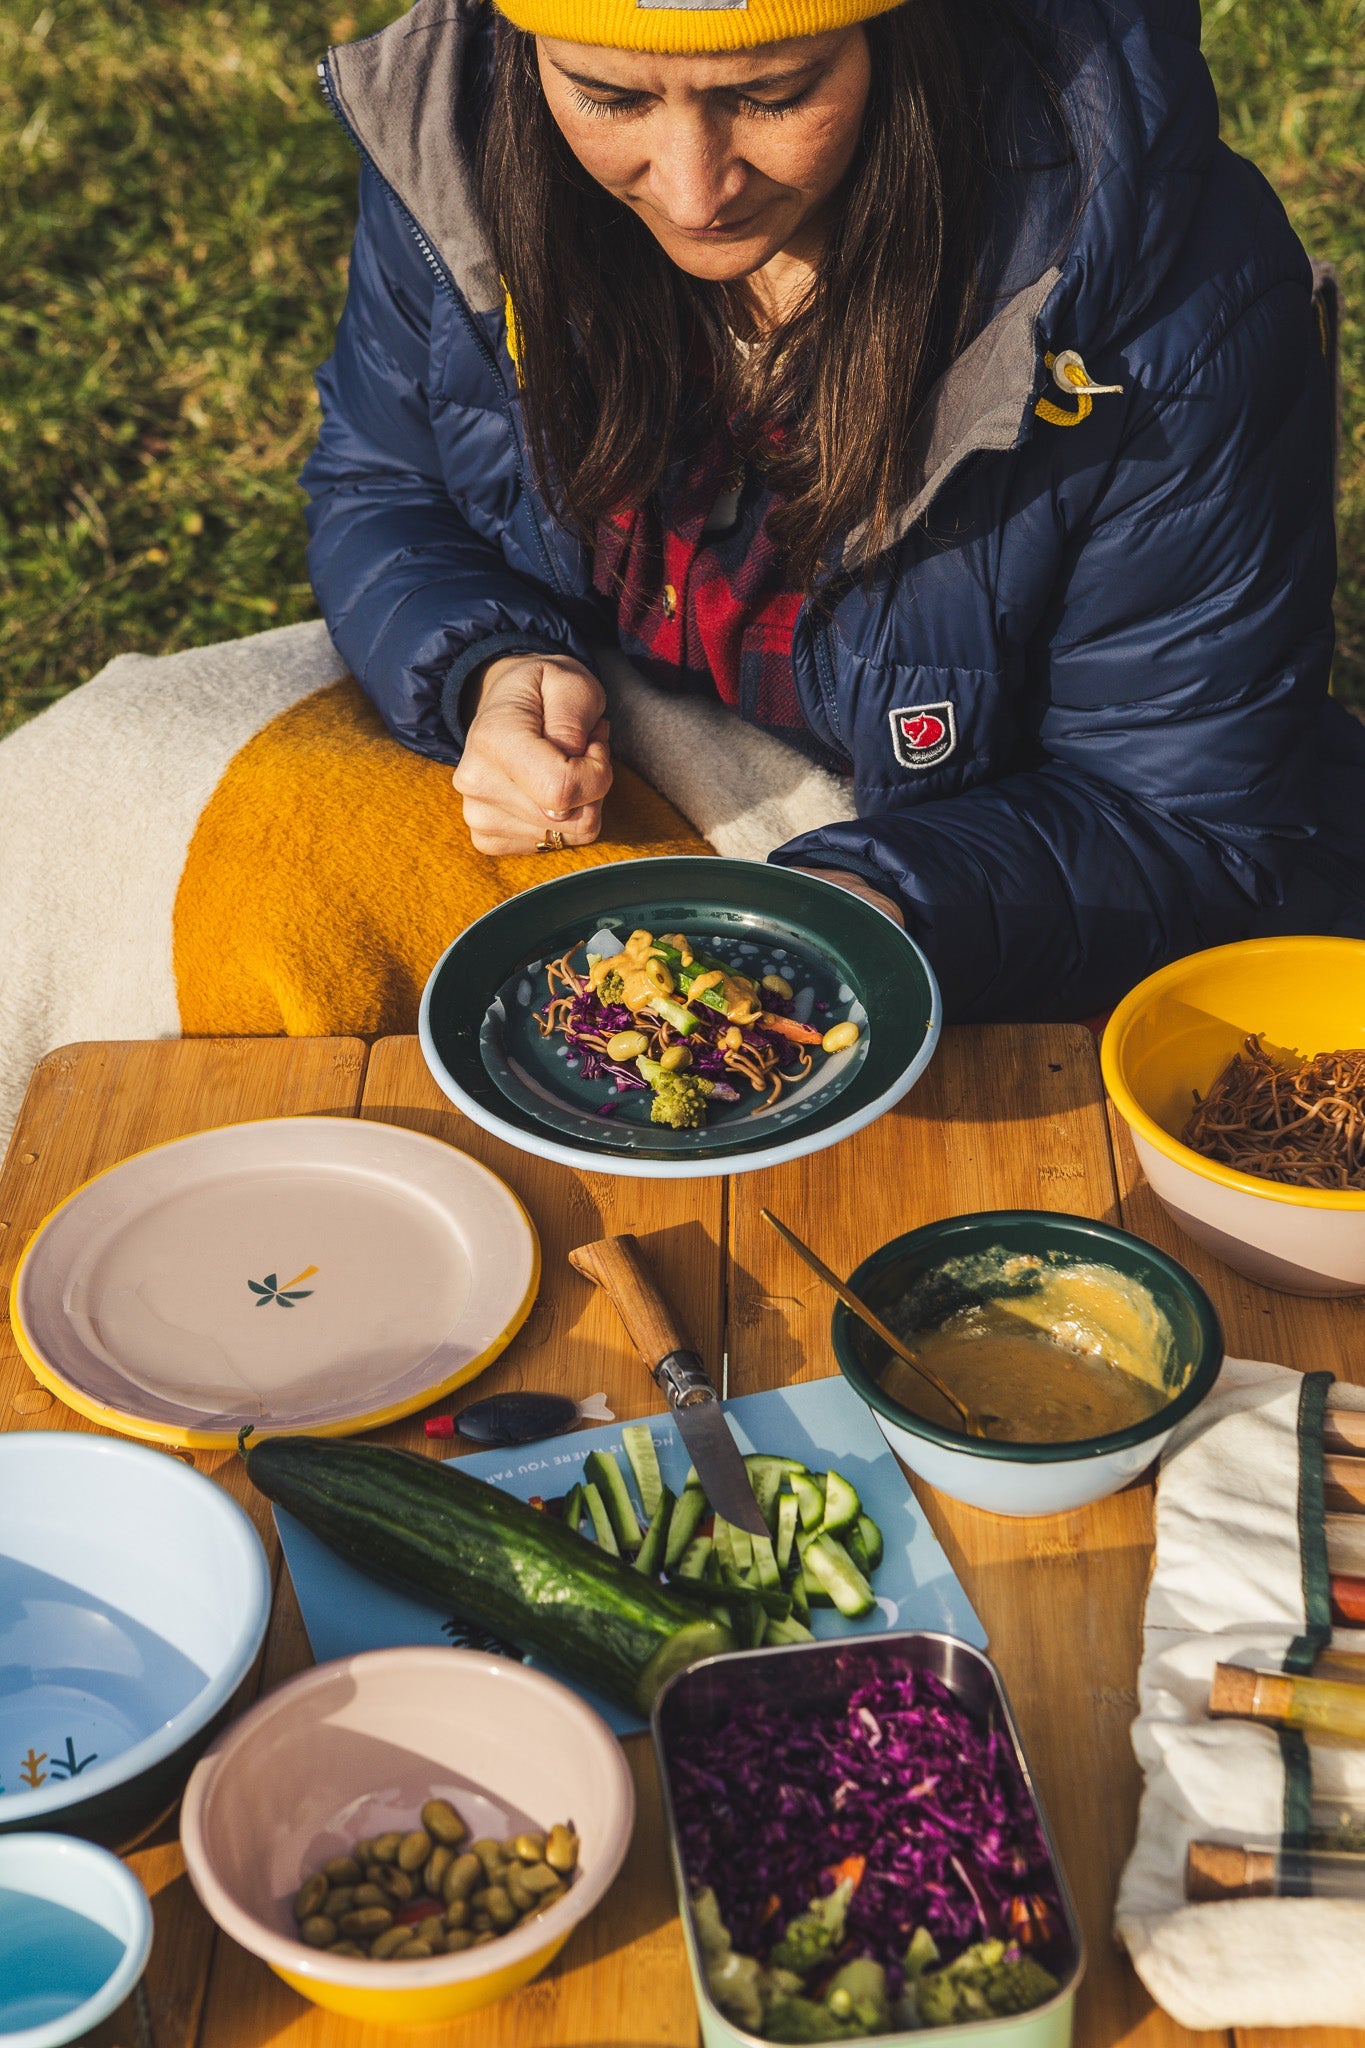 Frau beim Essen vor dem Camper mit buntem Camping Geschirr aus Emaille von Roadtyping